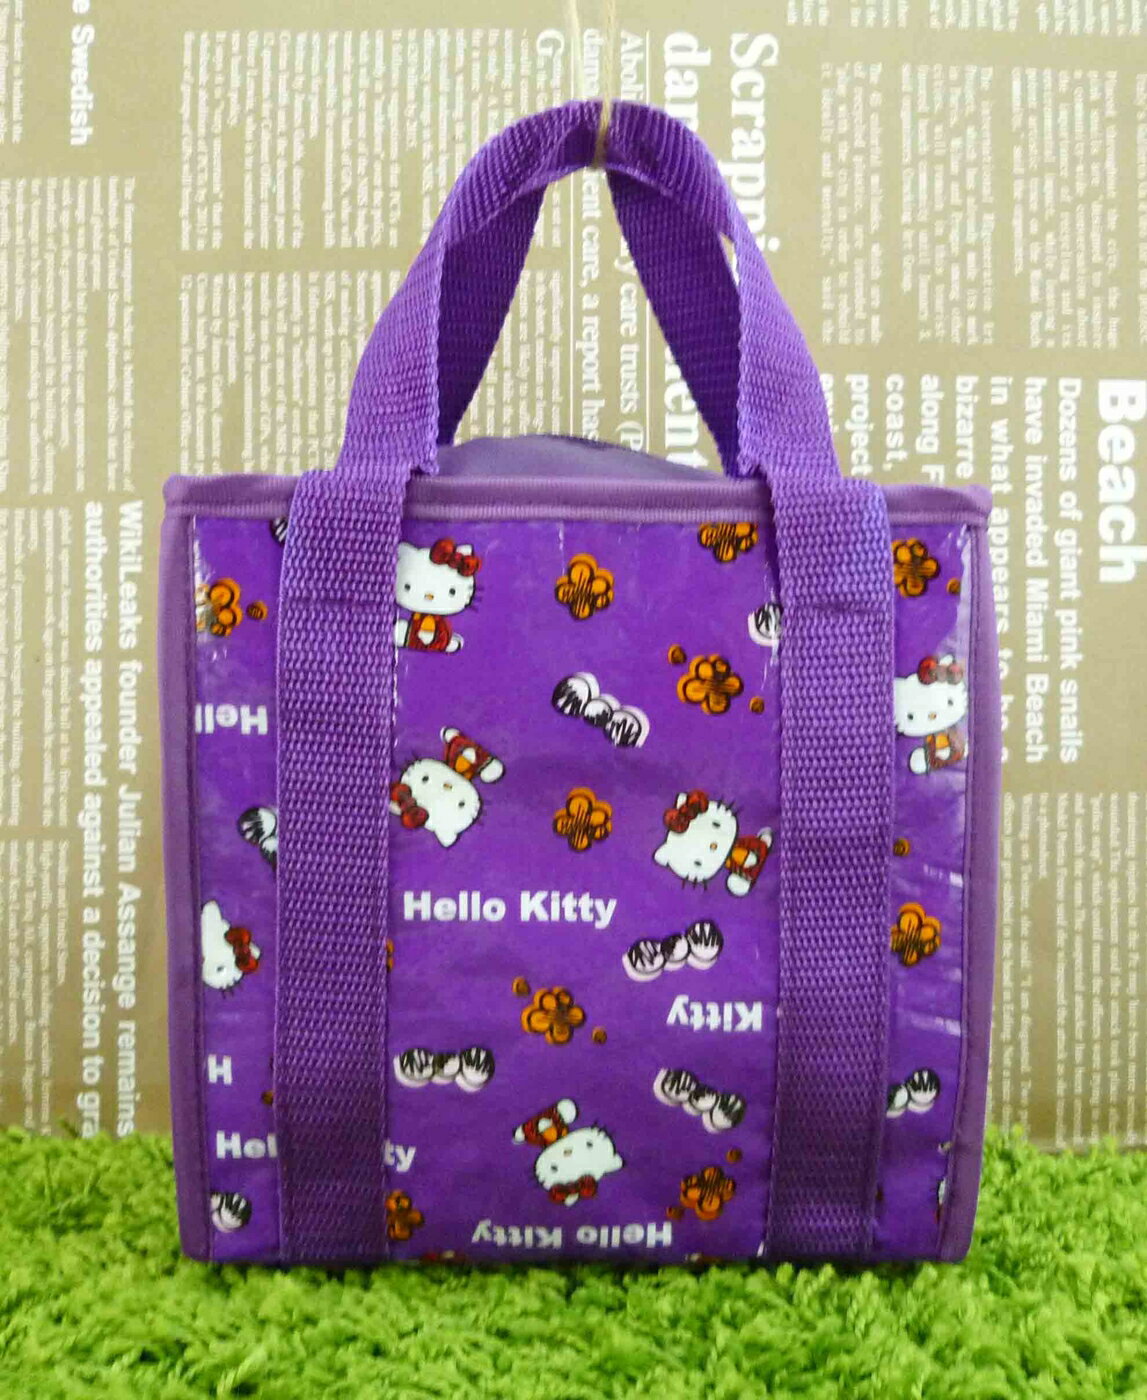 【震撼精品百貨】Hello Kitty 凱蒂貓 購物袋 側坐 紫【共1款】 震撼日式精品百貨